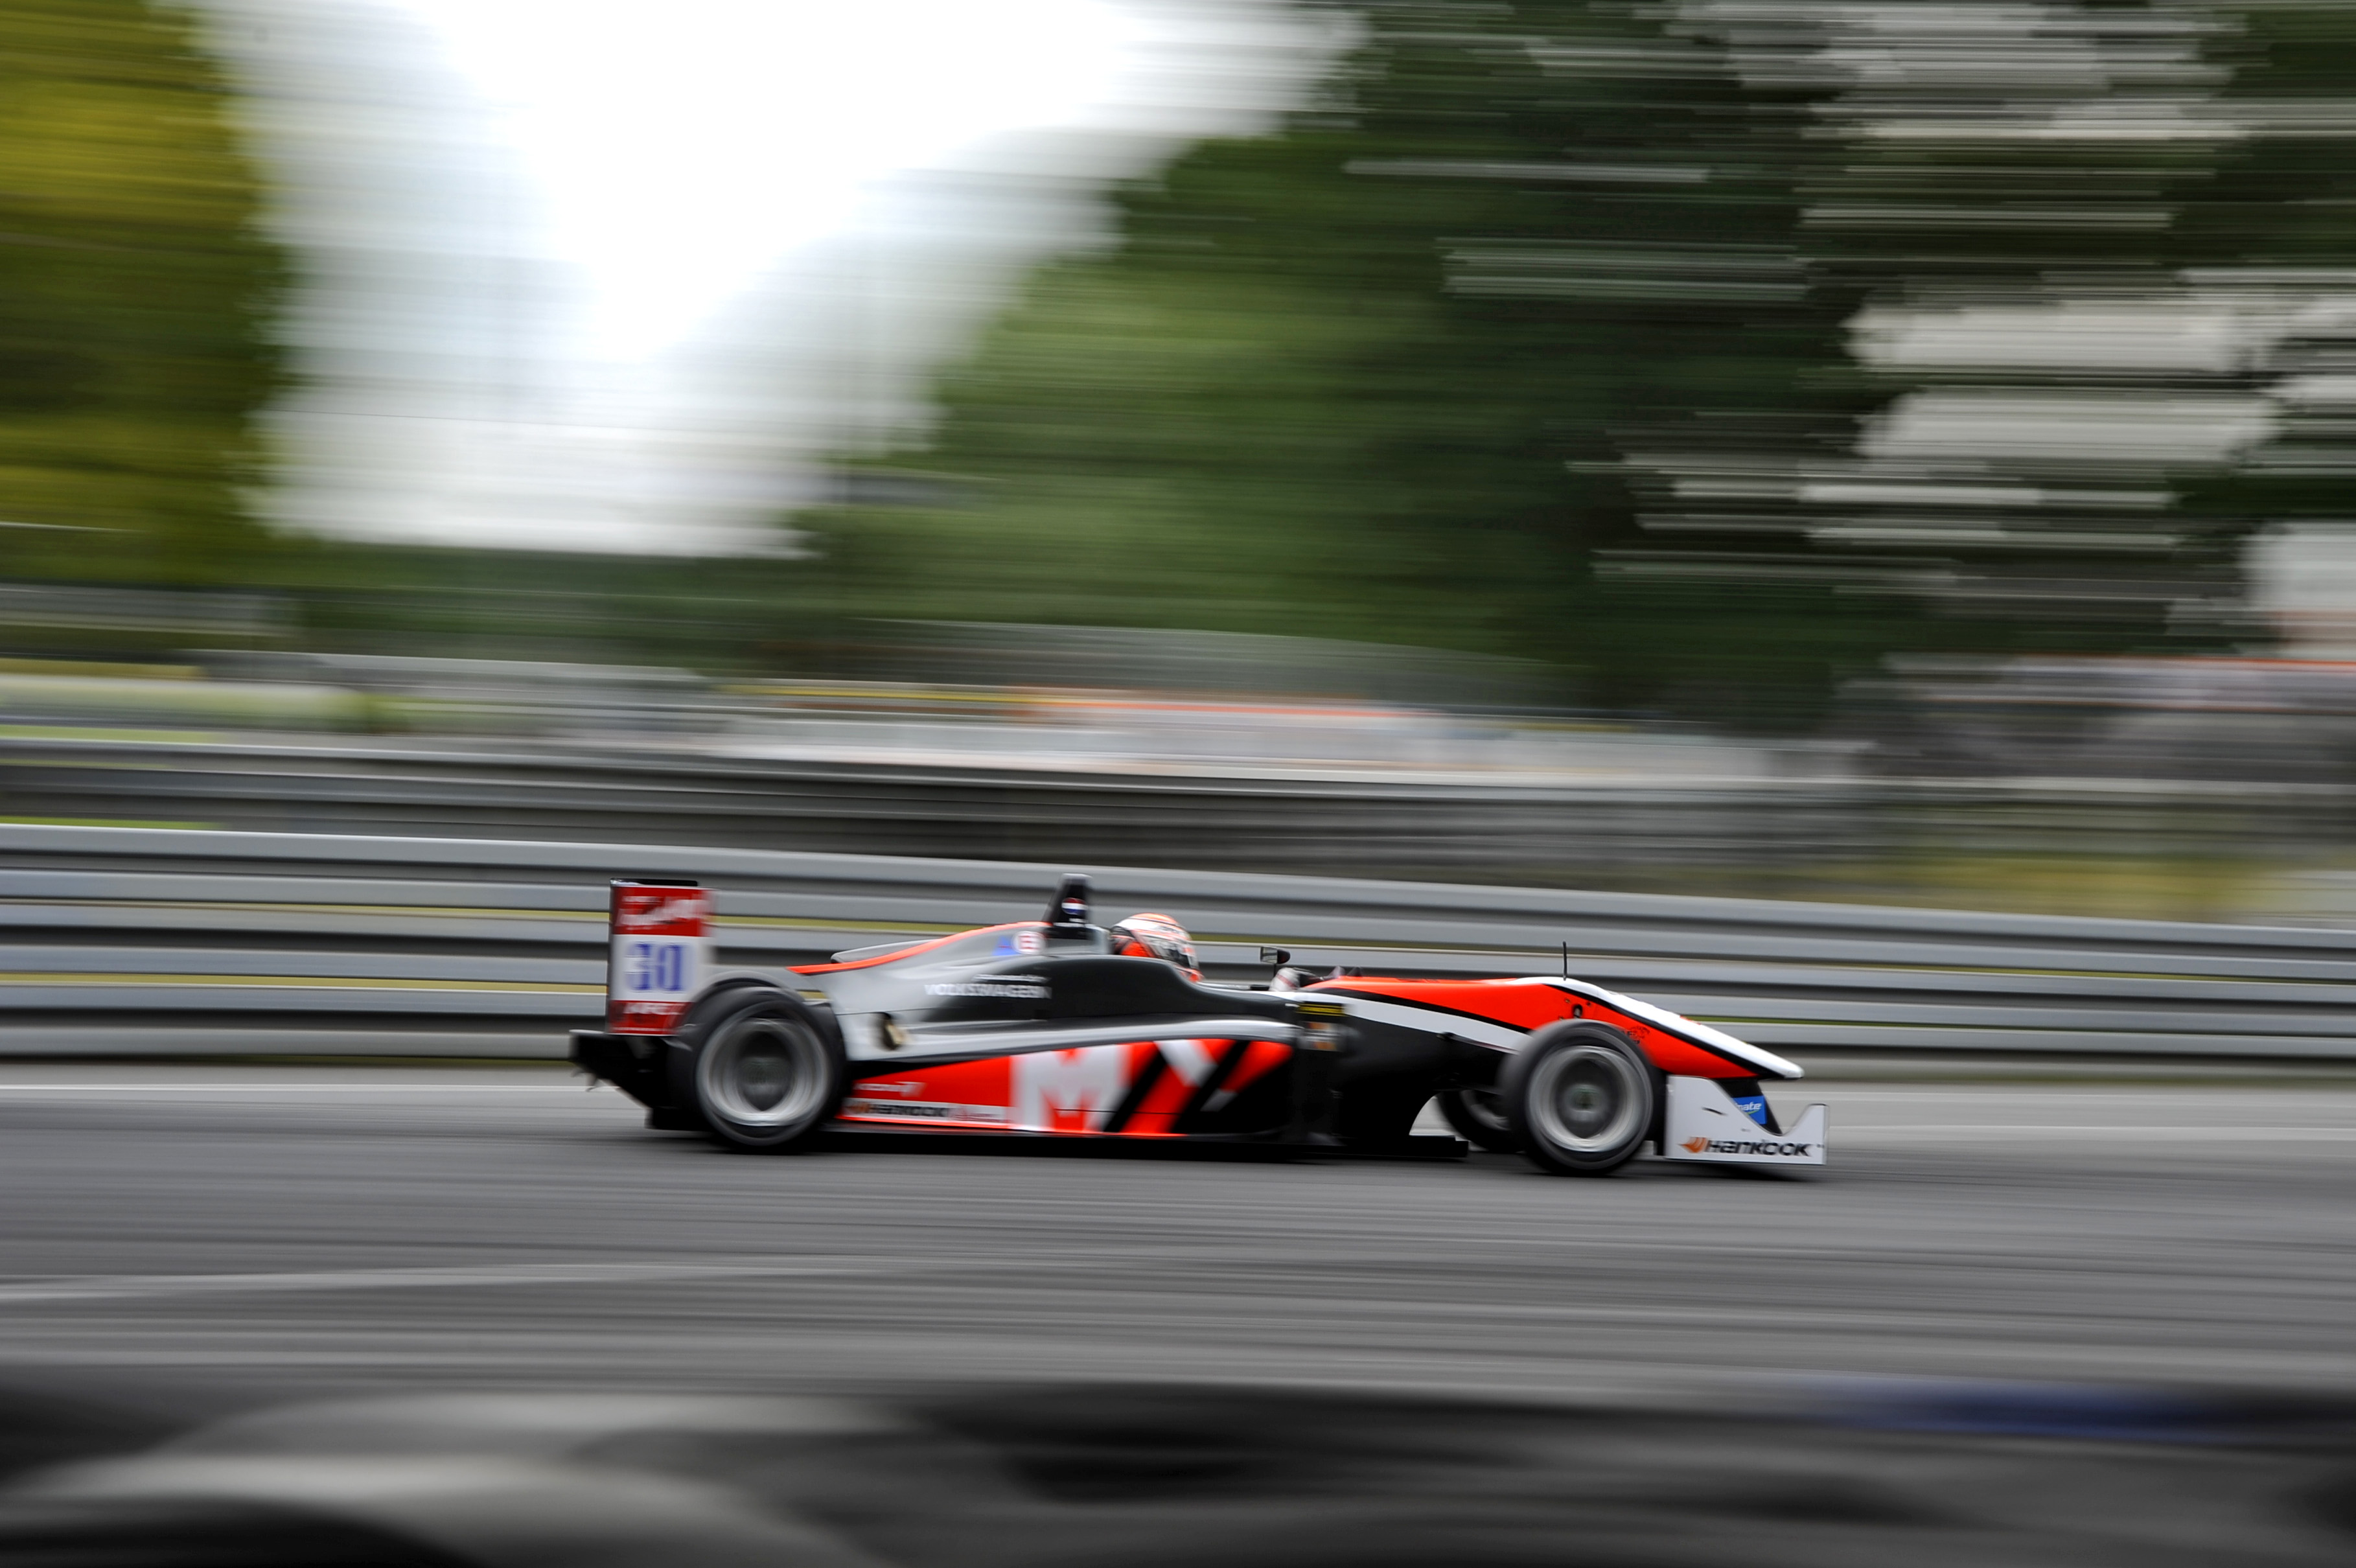 Max Verstappen - Van amersfort Racing F3